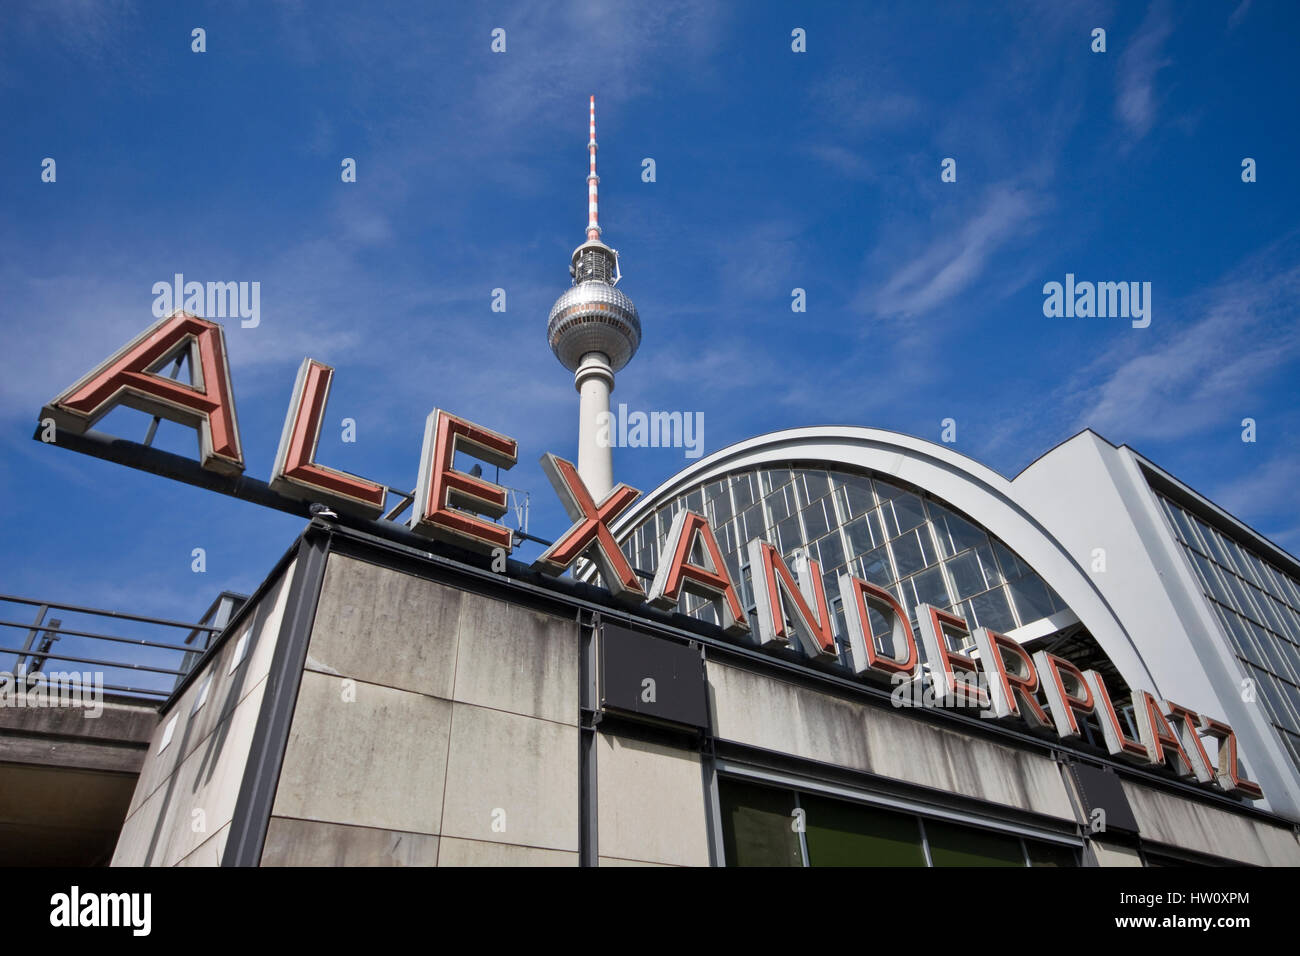 La gare Alexanderplatz avec la tour de télévision sur l'arrière-plan Banque D'Images